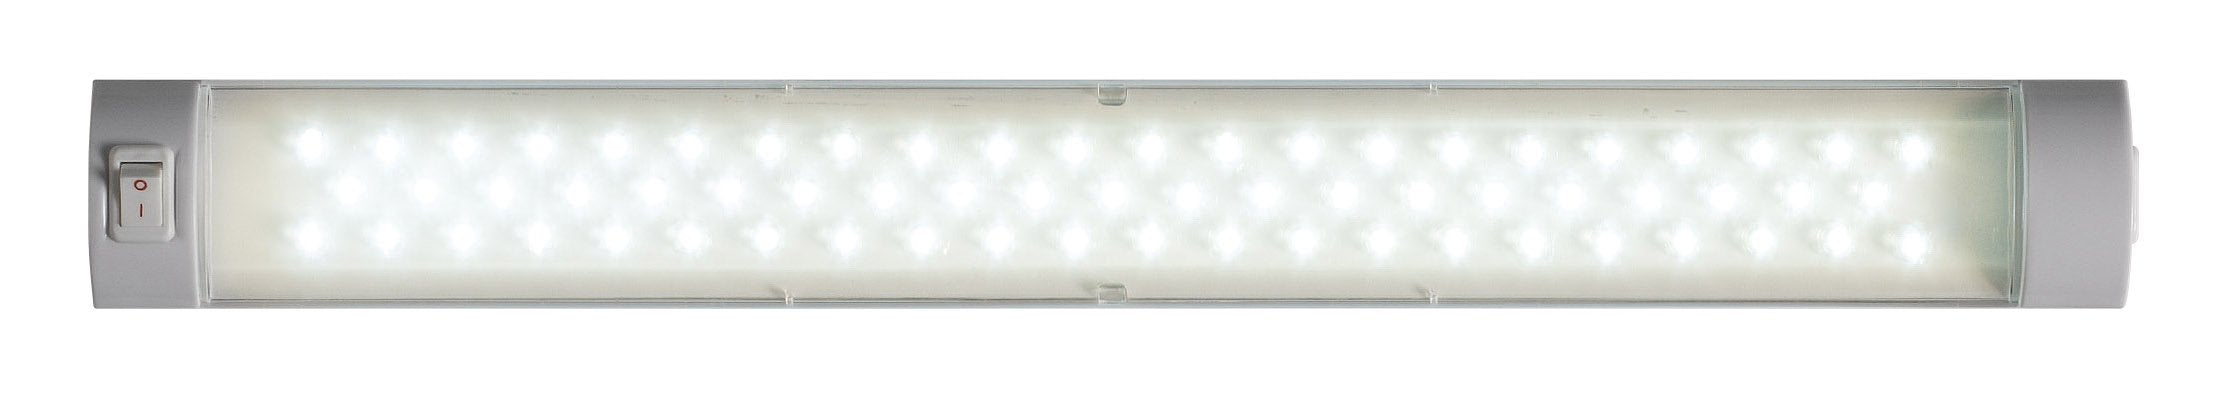 LED striplight 330mm warm white